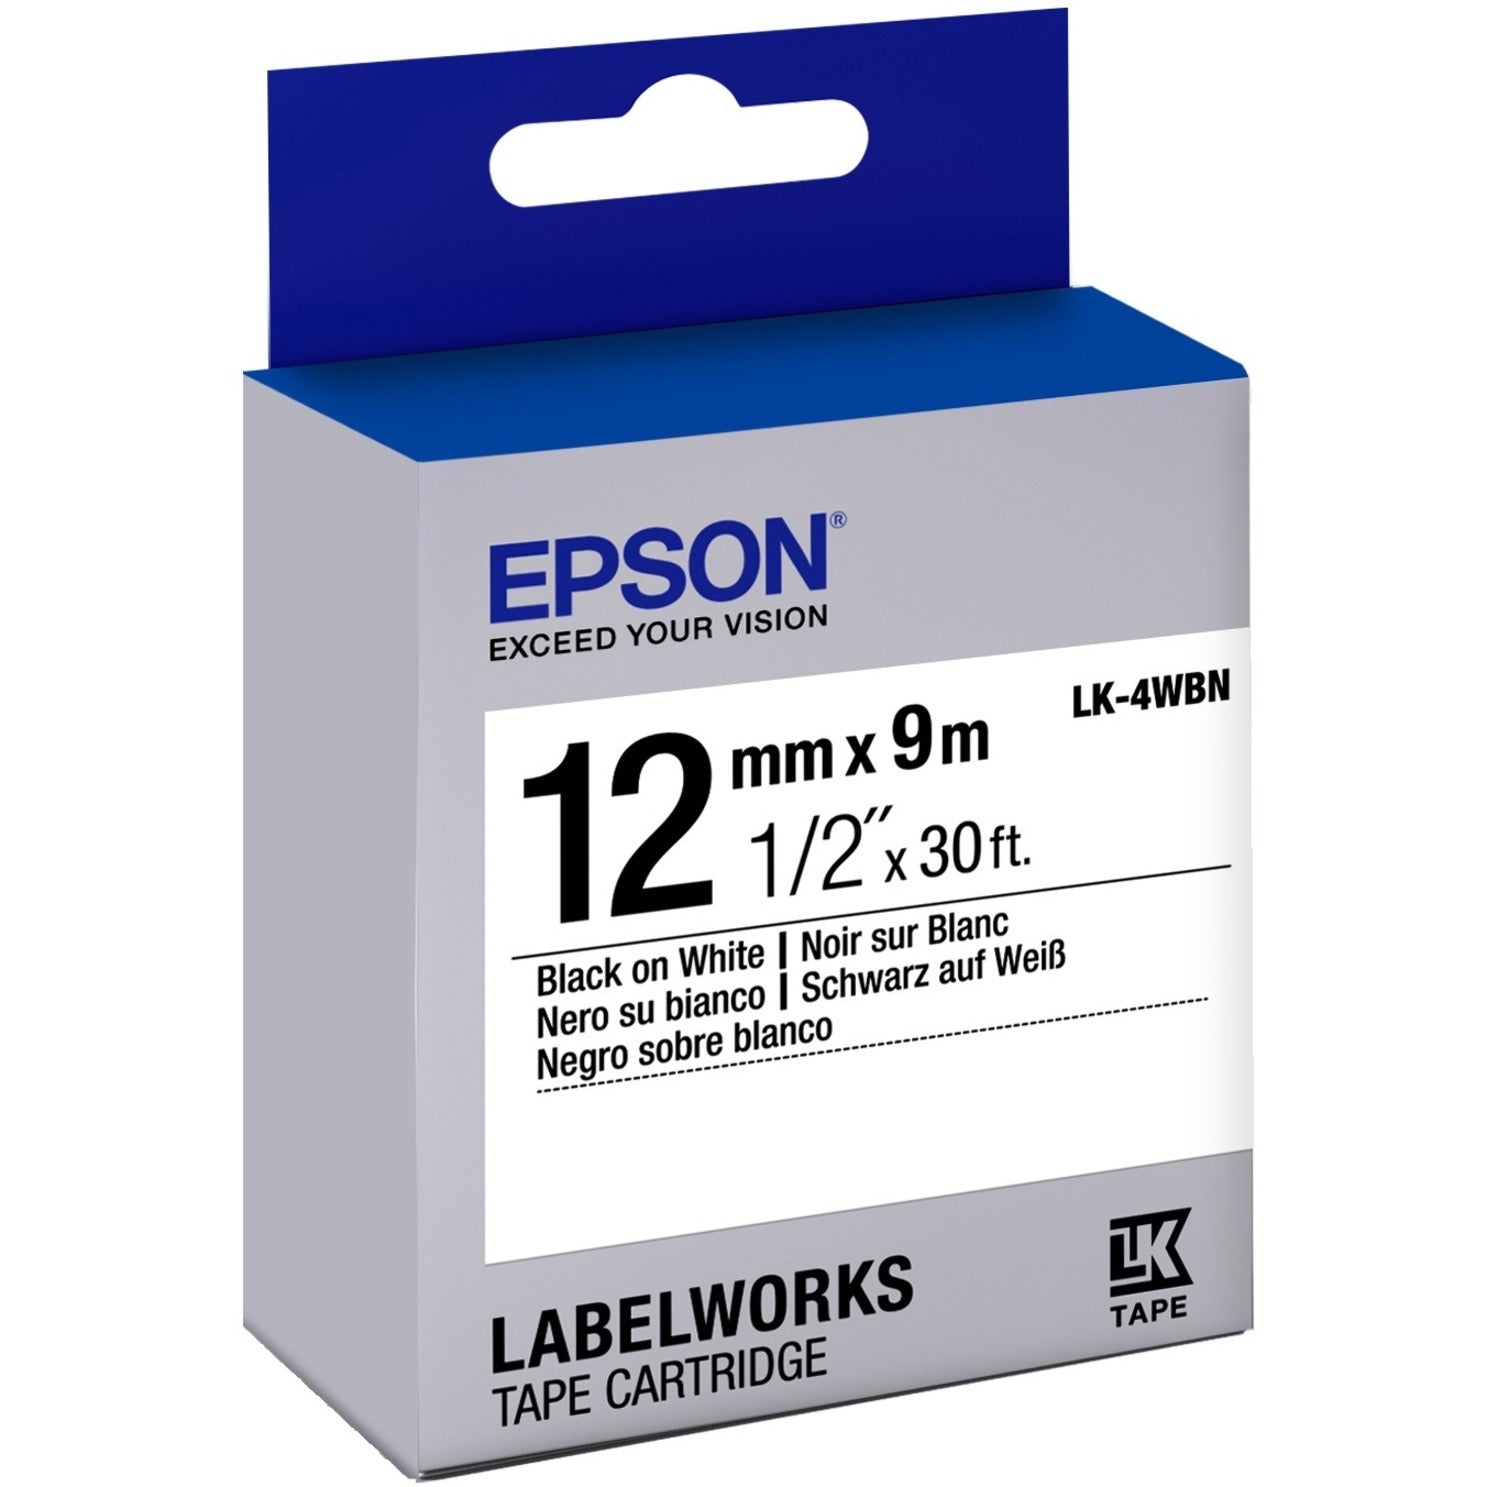 Epson LK-4WBN LabelWorks Standard Tape Cartridge ~1/2" Svart på vit Enkel avskalning